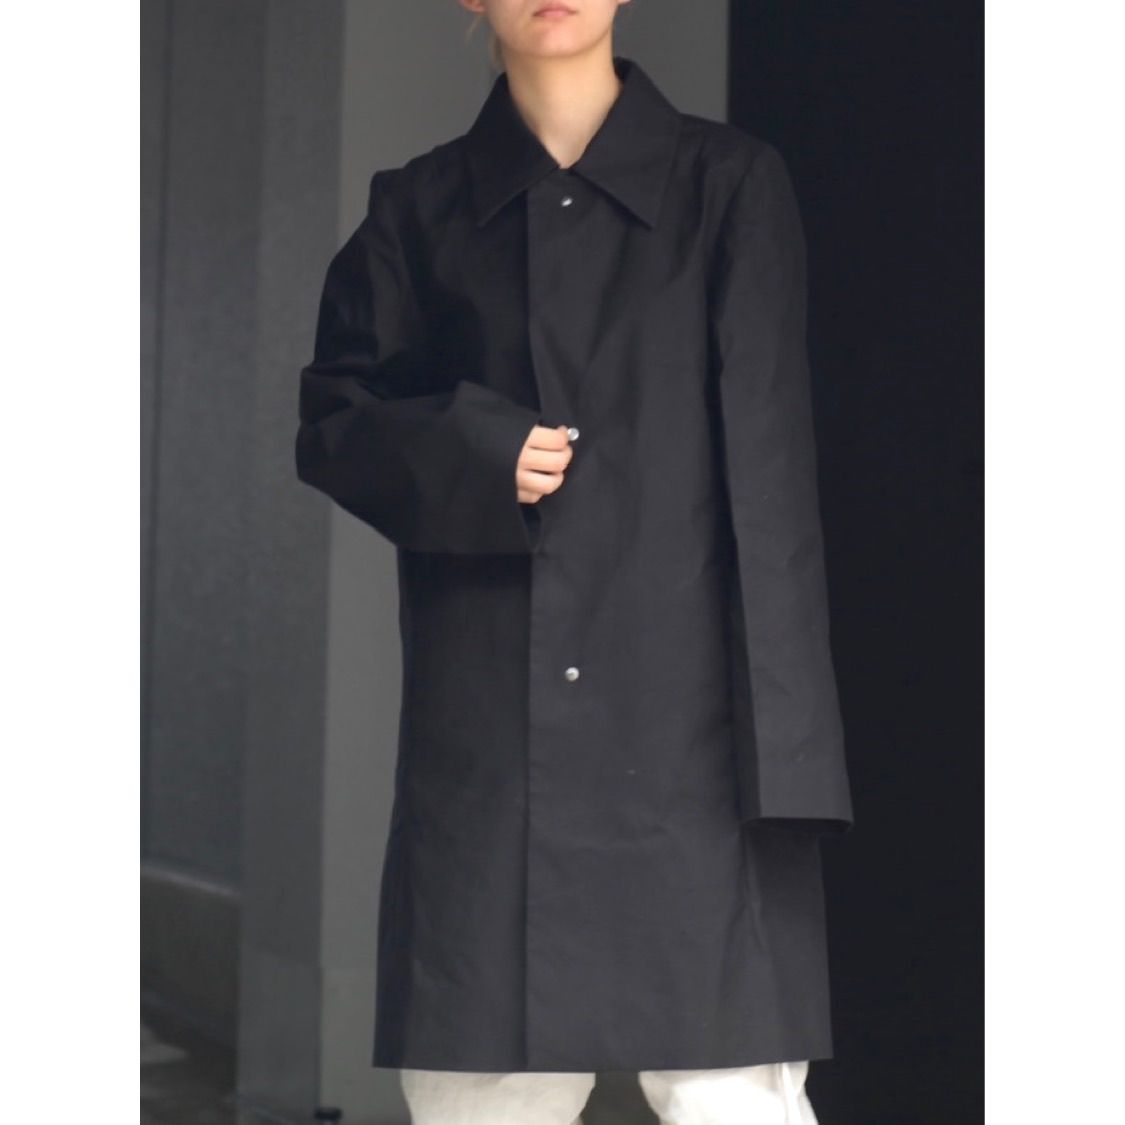 限定販売】 Omar - afridi 19aw OMAR draped パネル layer AFRIDI coat